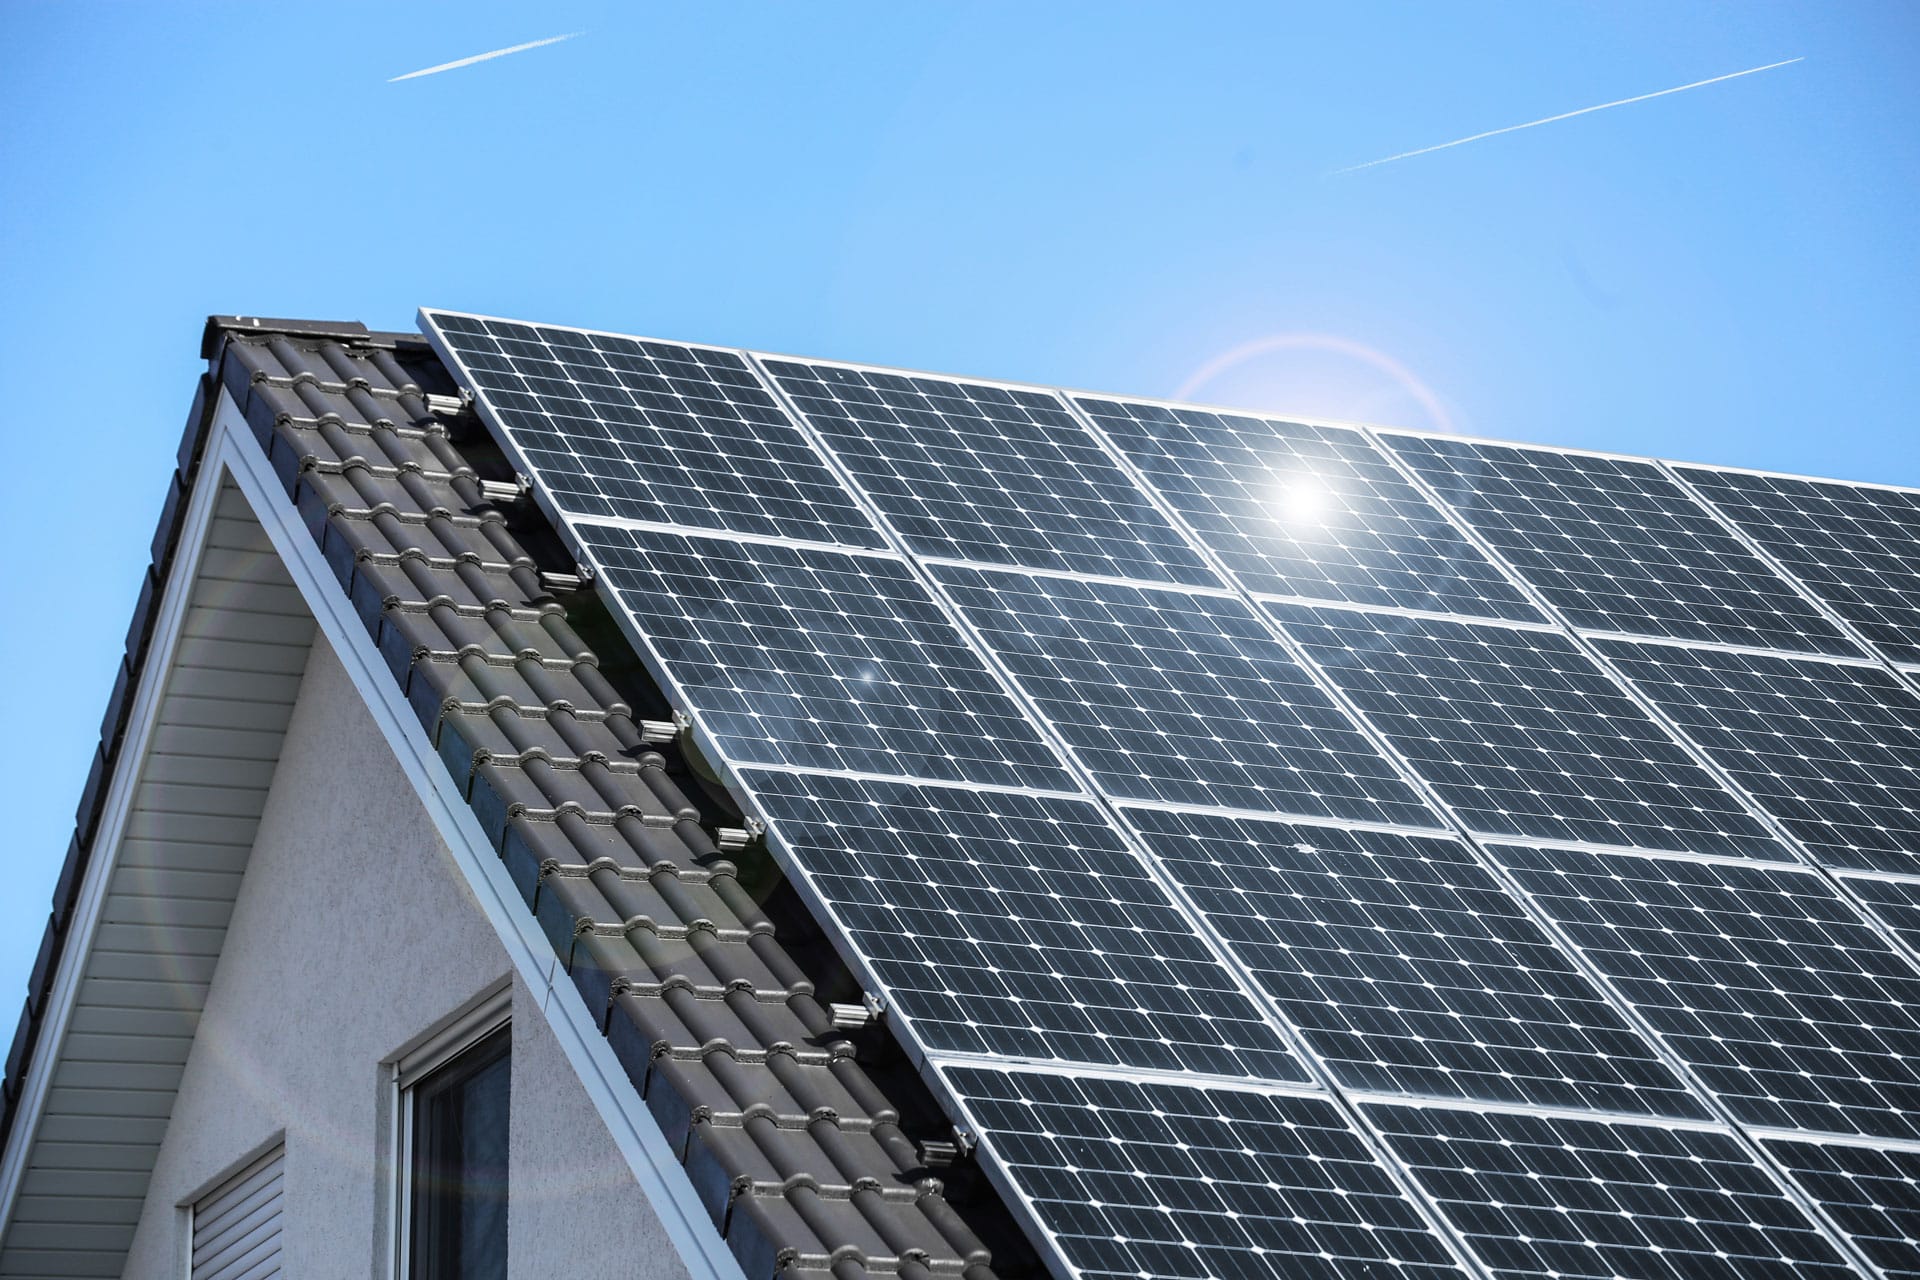 Dach-Photovoltaik-Anlage auf grauem Ziegeldach mit PV-Modulen | Svoboda Metalltechnik